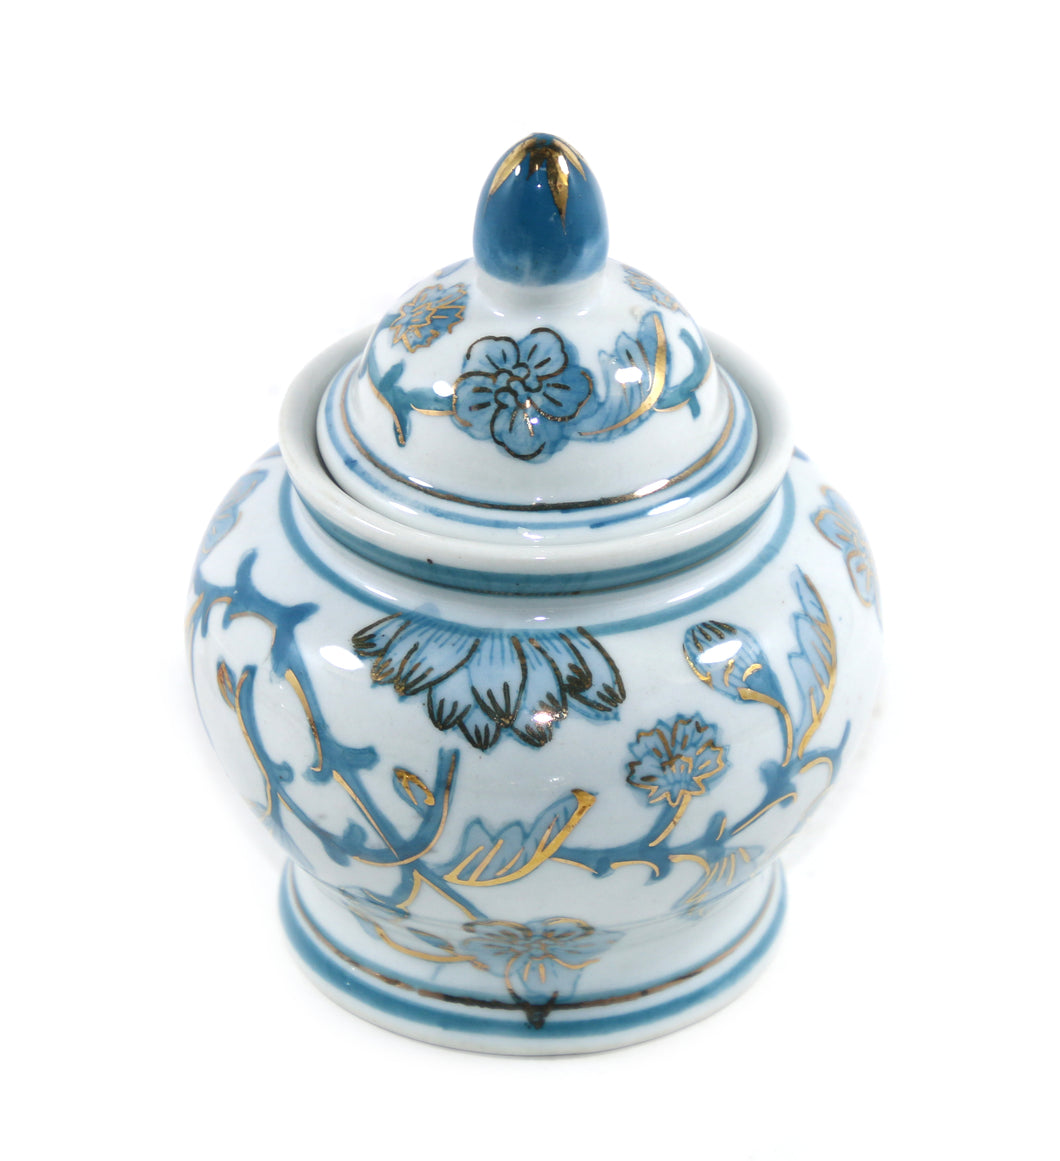 Vintage stunning teal & white small lidded ginger jar urn pot